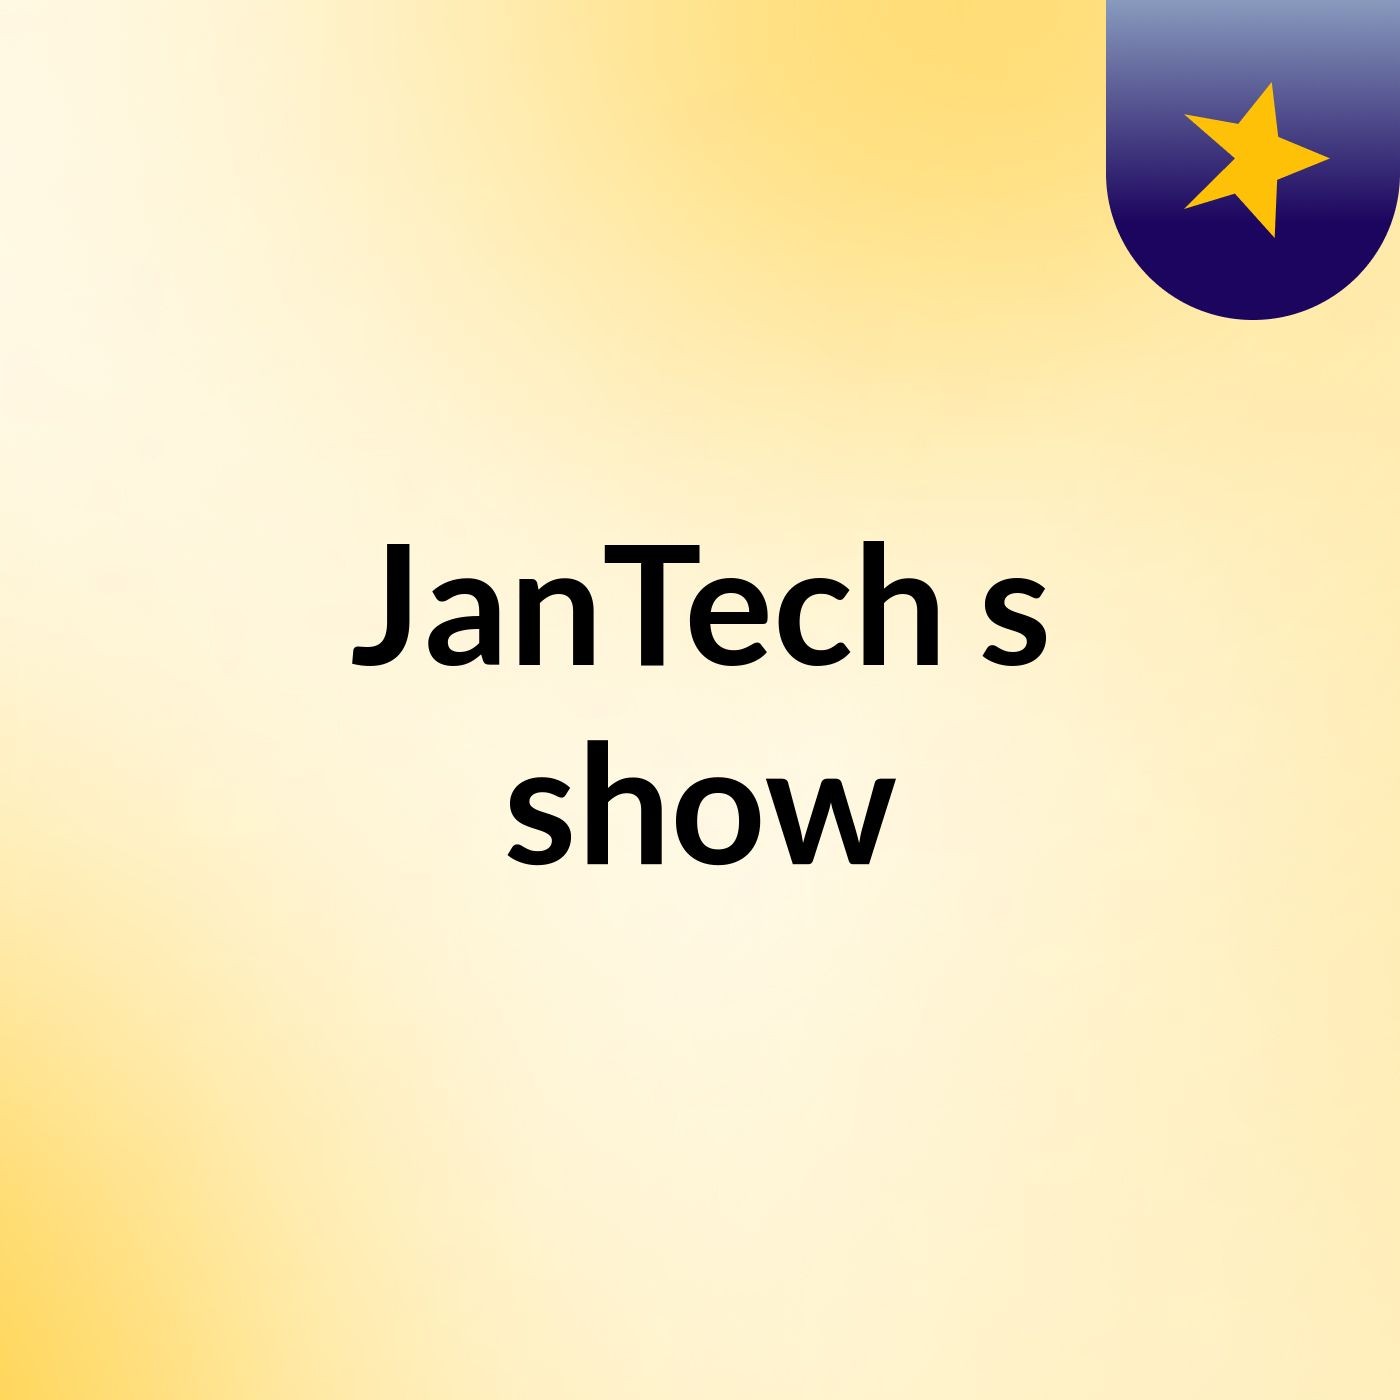 JanTech's show